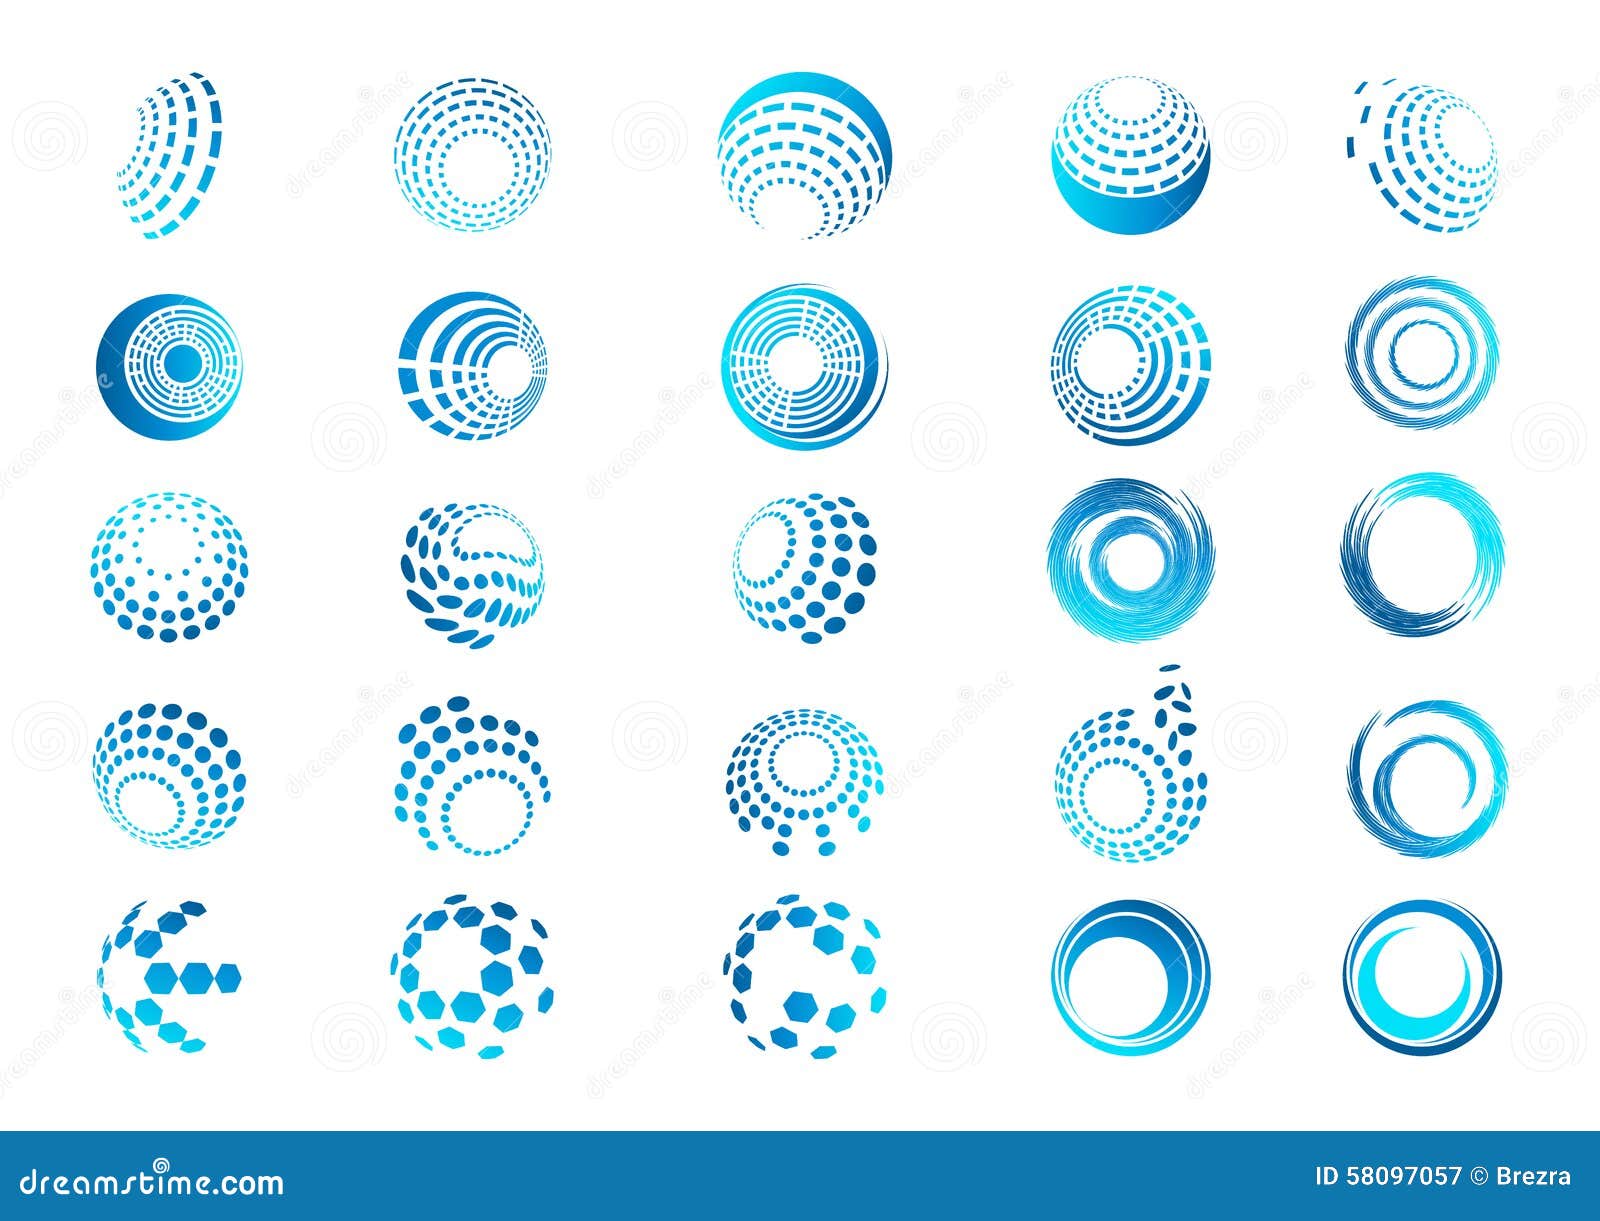 sphere, logo, globe, wave, circle, round, technologogy, world   icon set